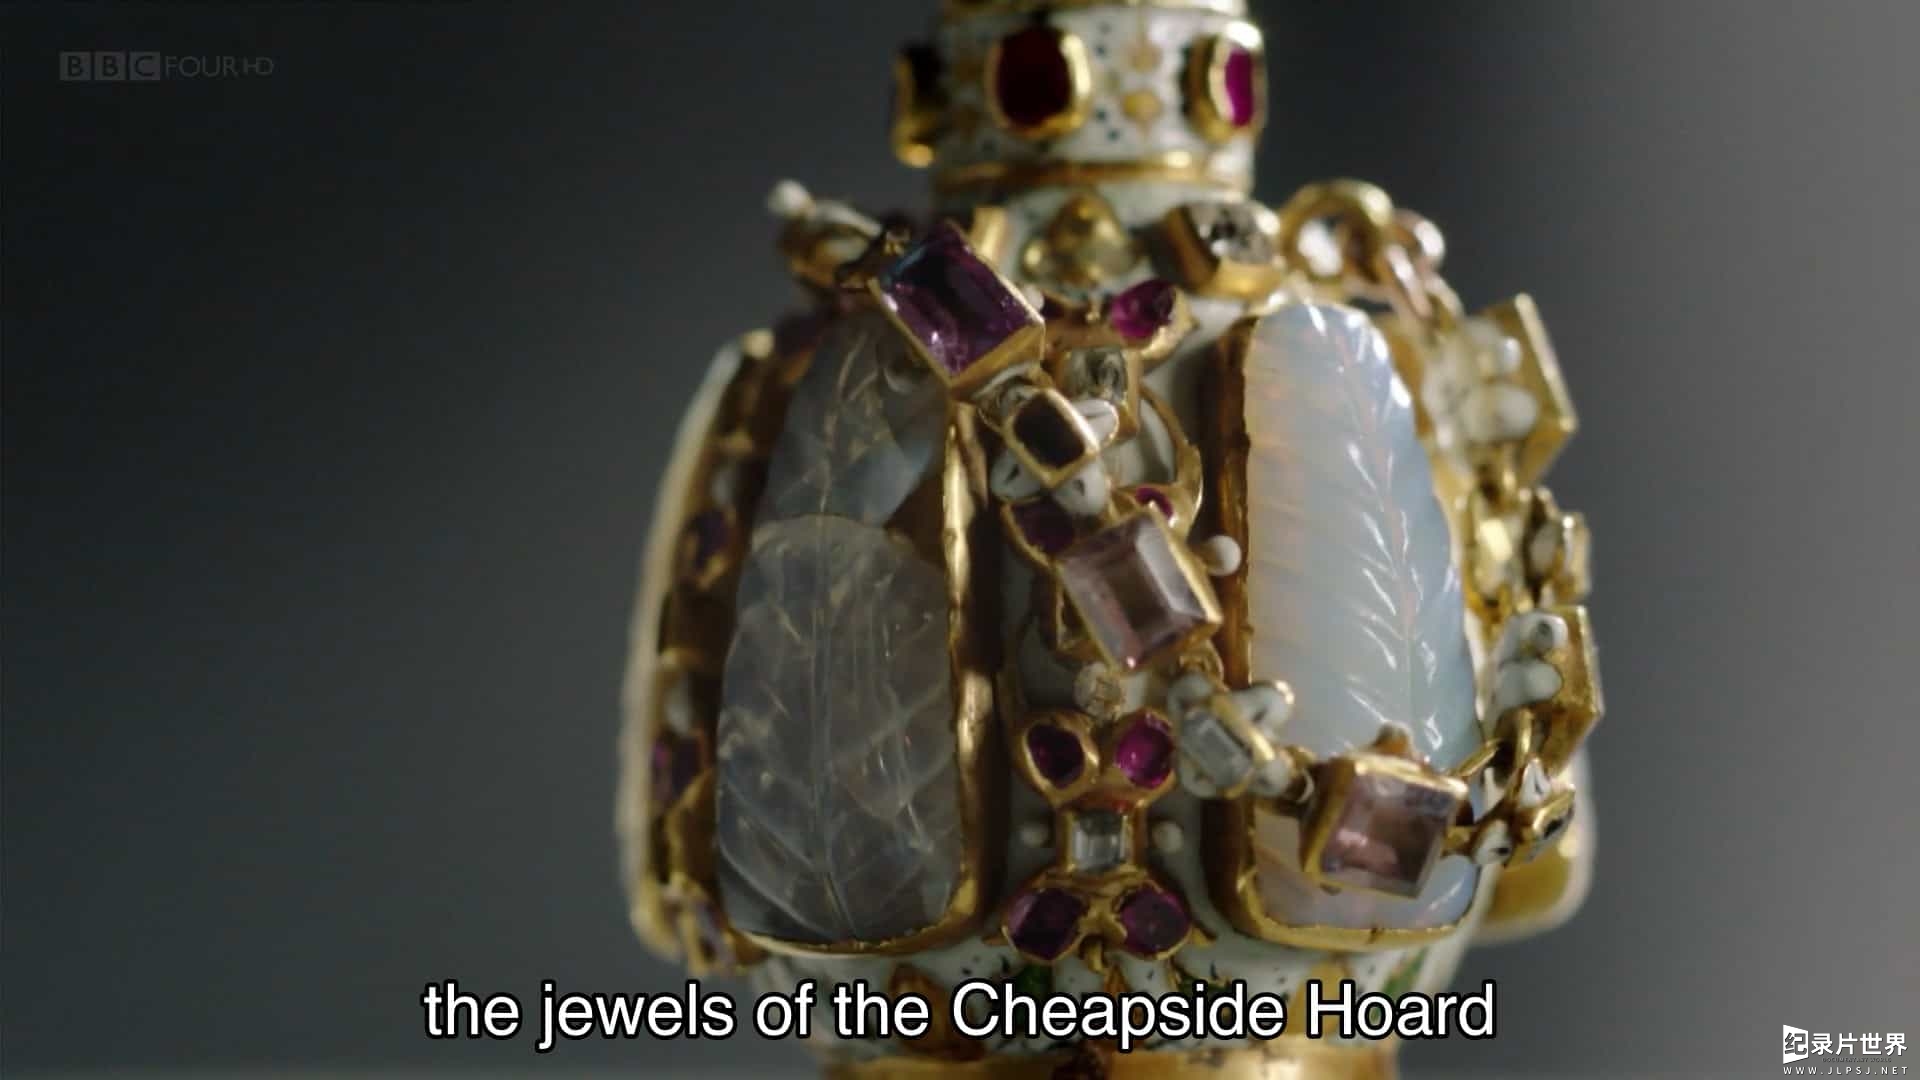 BBC纪录片《齐普赛的隐秘宝藏 The Hidden Jewels of the Cheapside Hoard》全1集